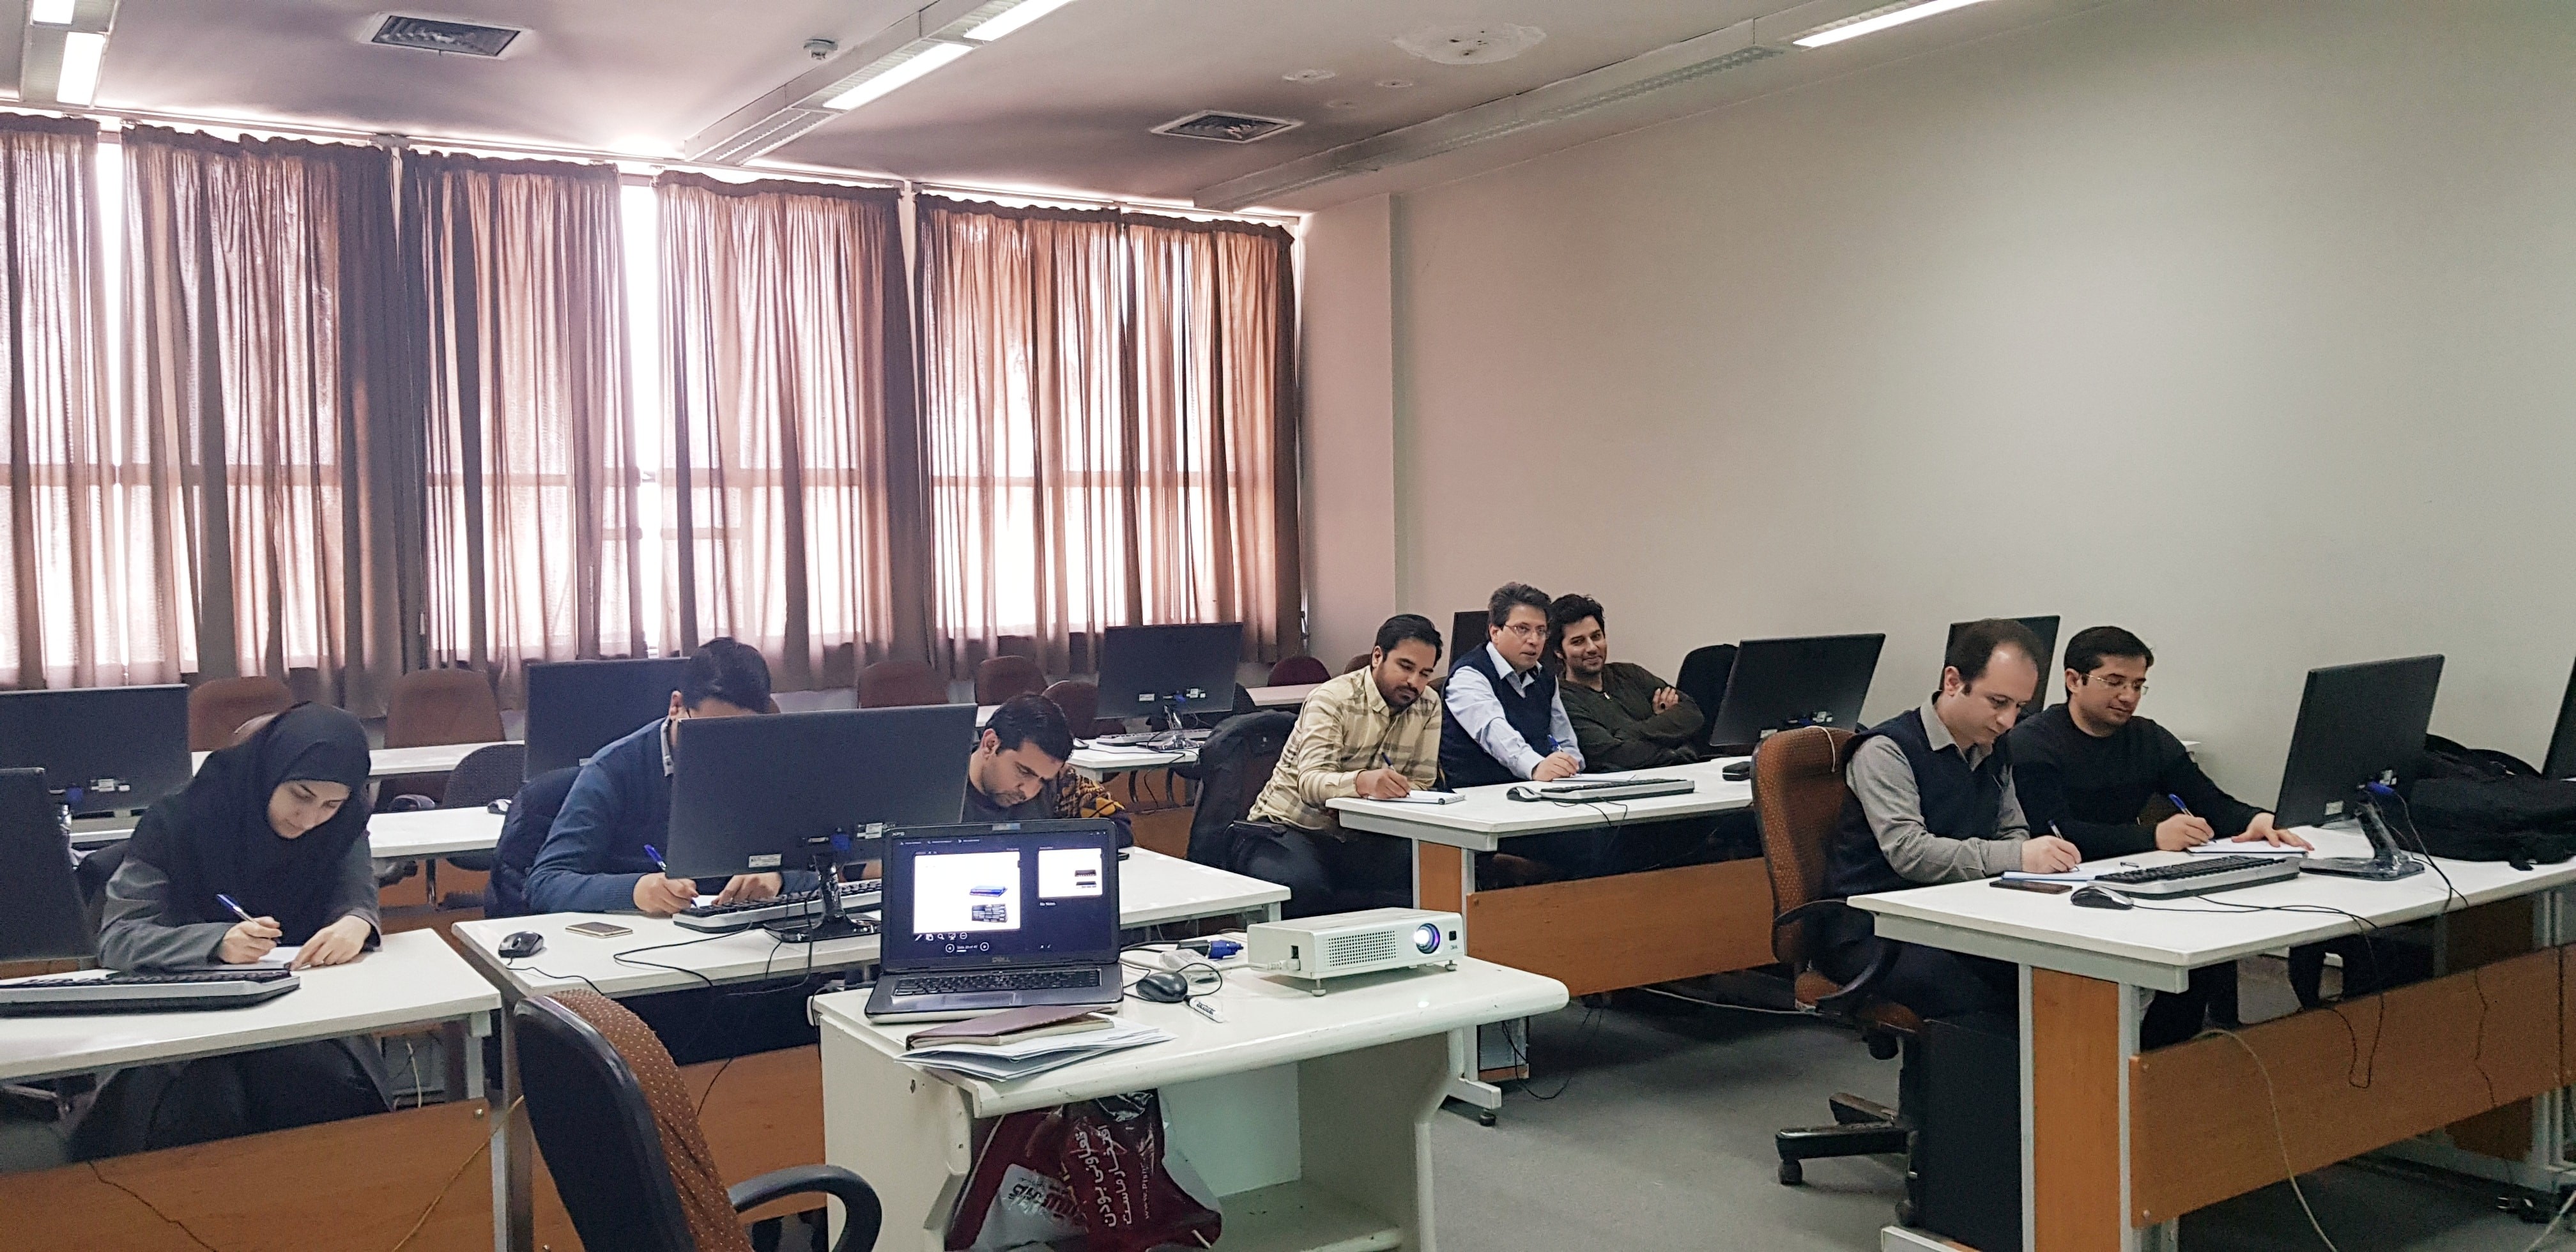 برگزاری دوره +Network در مجتمع آموزش عالی علمی-کاربردی صنعت آب و برق استان خراسان (مشهد)